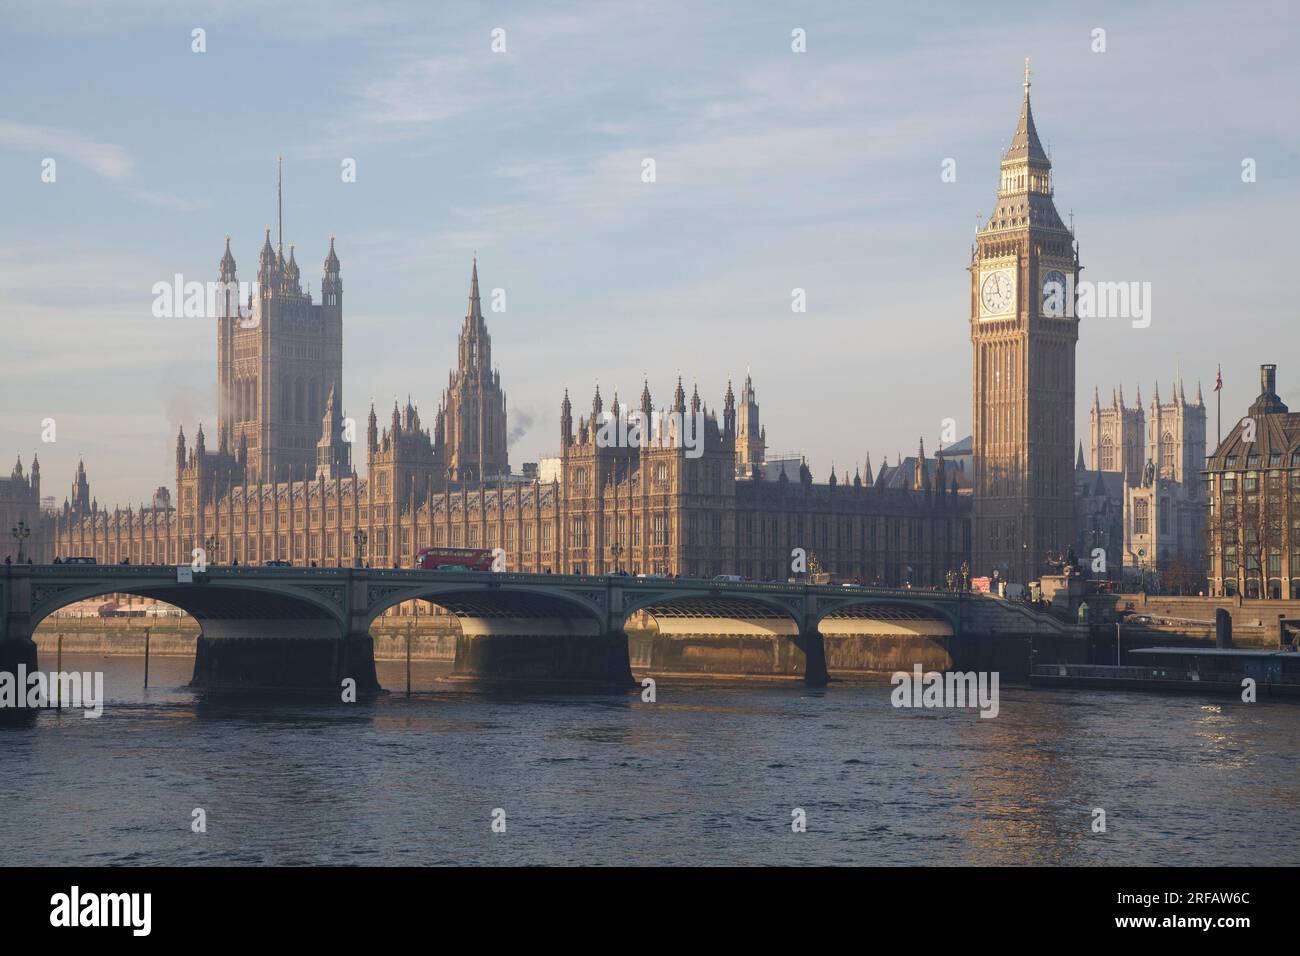 Le Palais de Westminster (ou chambres du Parlement) avec Big Ben se trouvent sur la rive nord de la Tamise à Londres Banque D'Images